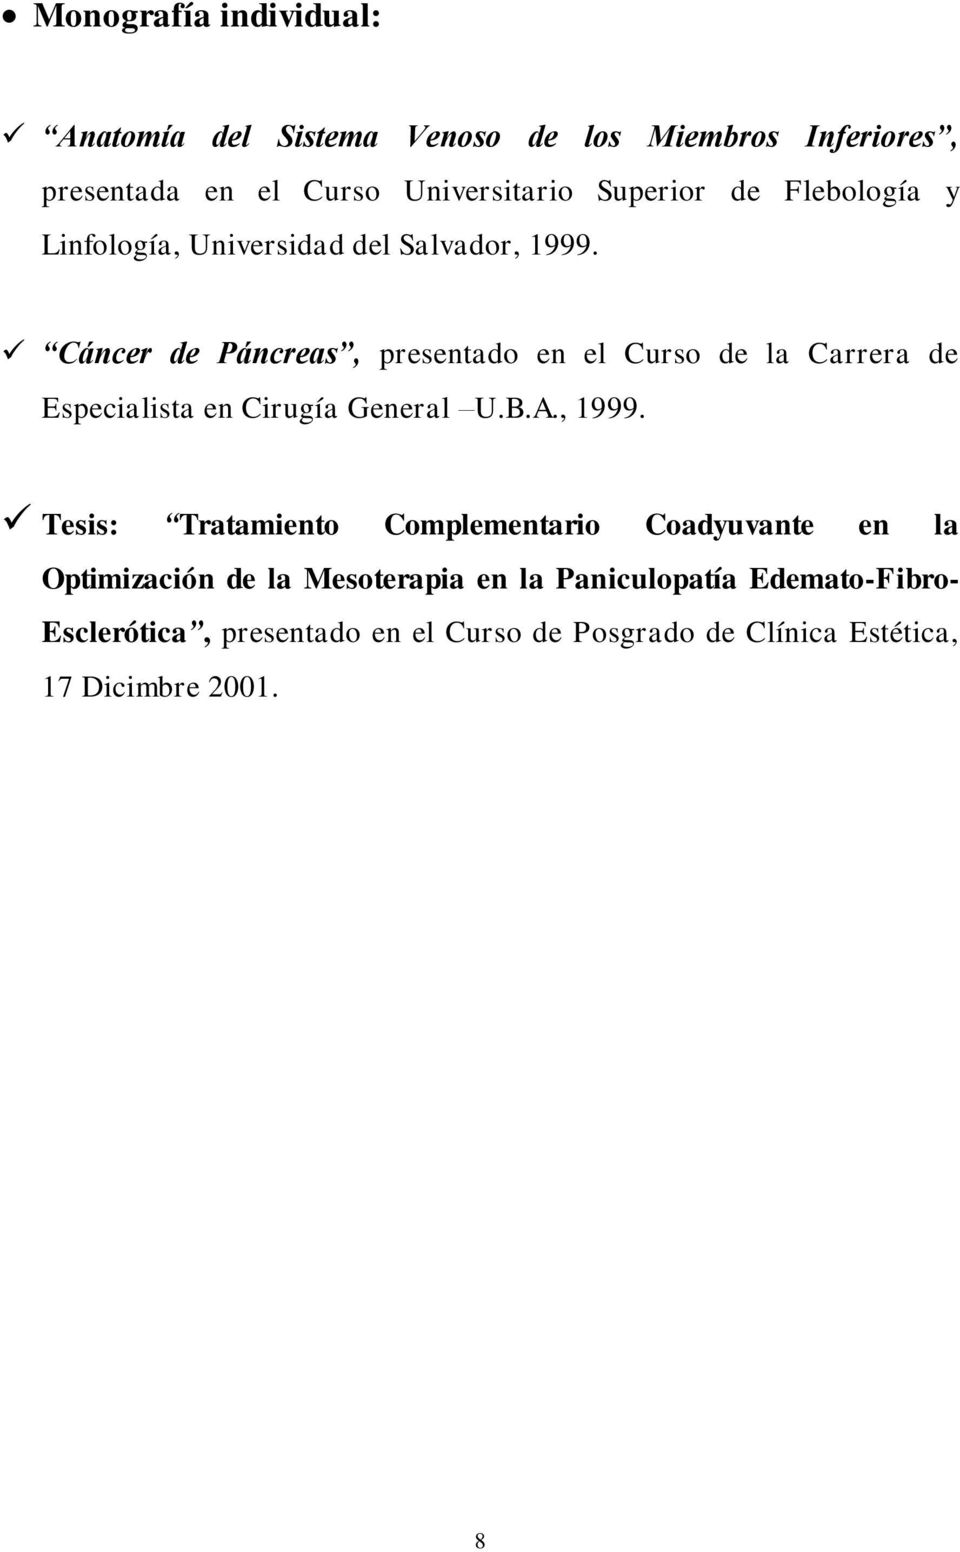 Cáncer de Páncreas, presentado en el Curso de la Carrera de Especialista en Cirugía General U.B.A., 1999.